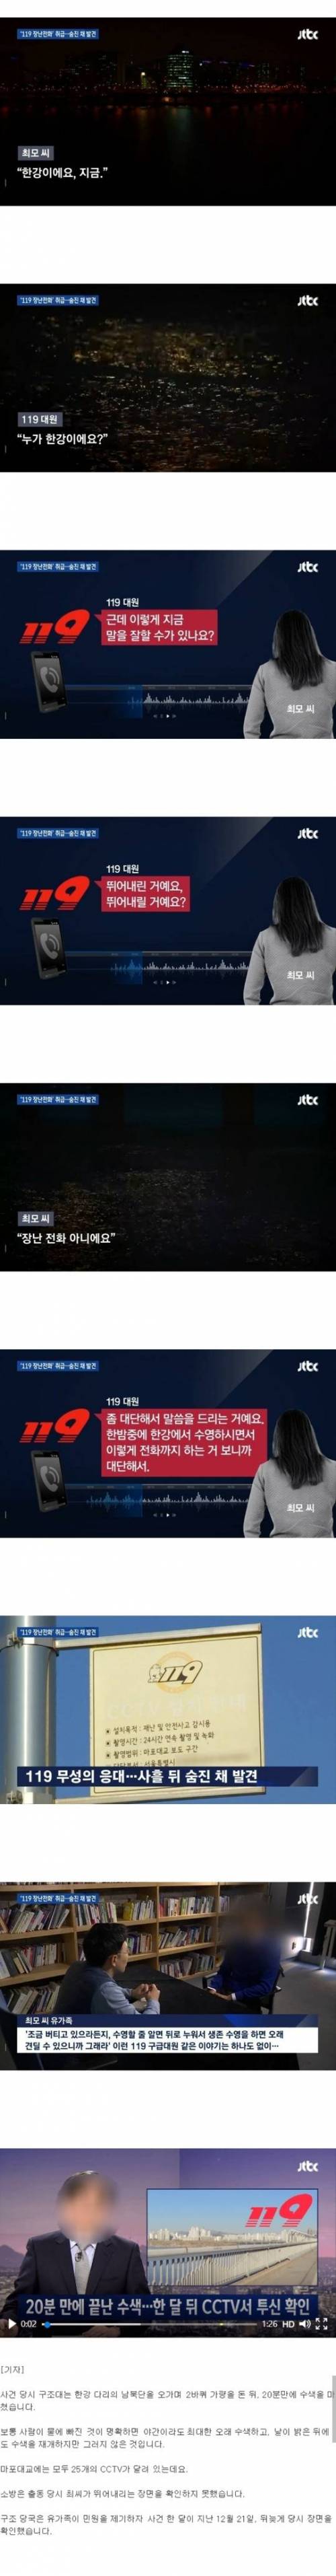 '장난전화' 취급한 신고자 3일 뒤 숨진채 발견.jpg